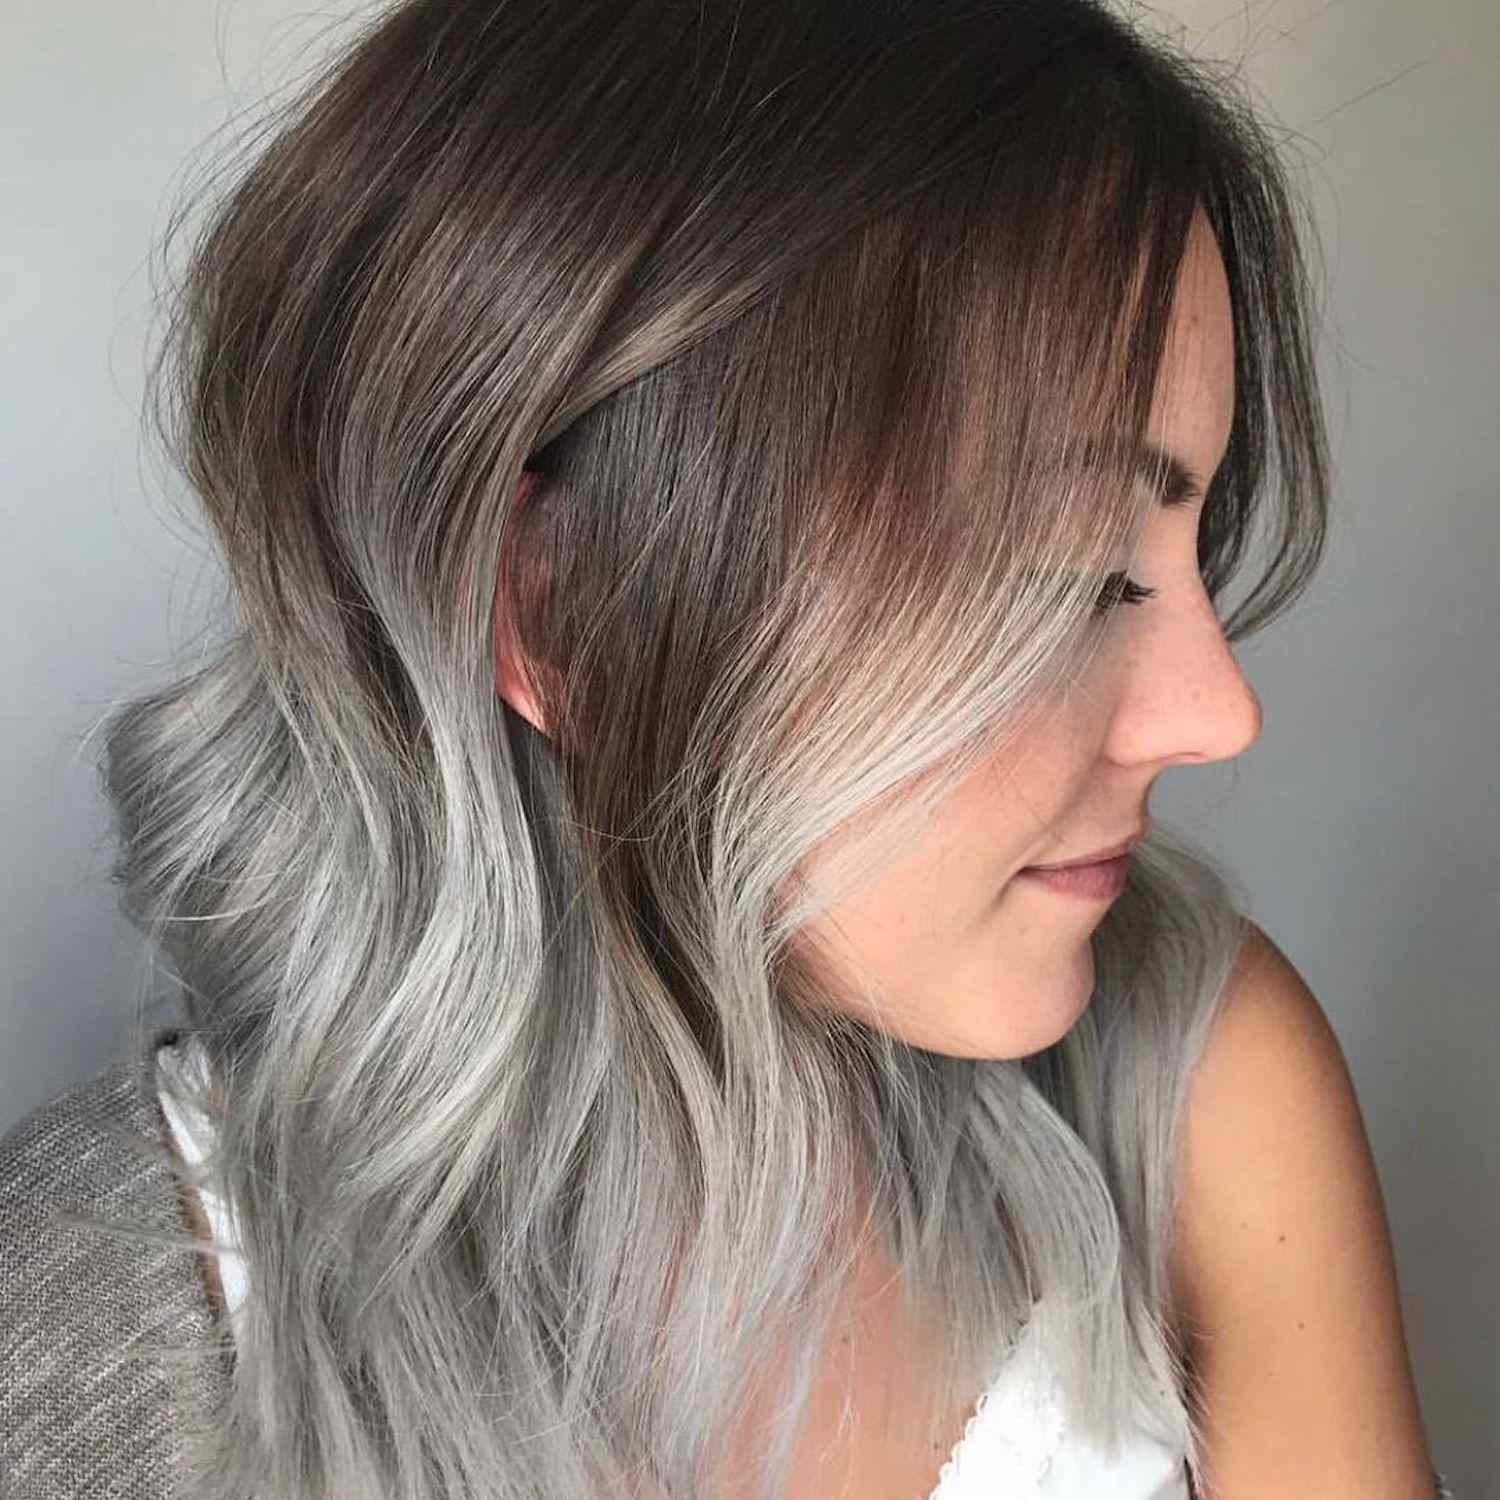 A vista lateral do cabelo com cabana de prata defumada e raízes brunéias